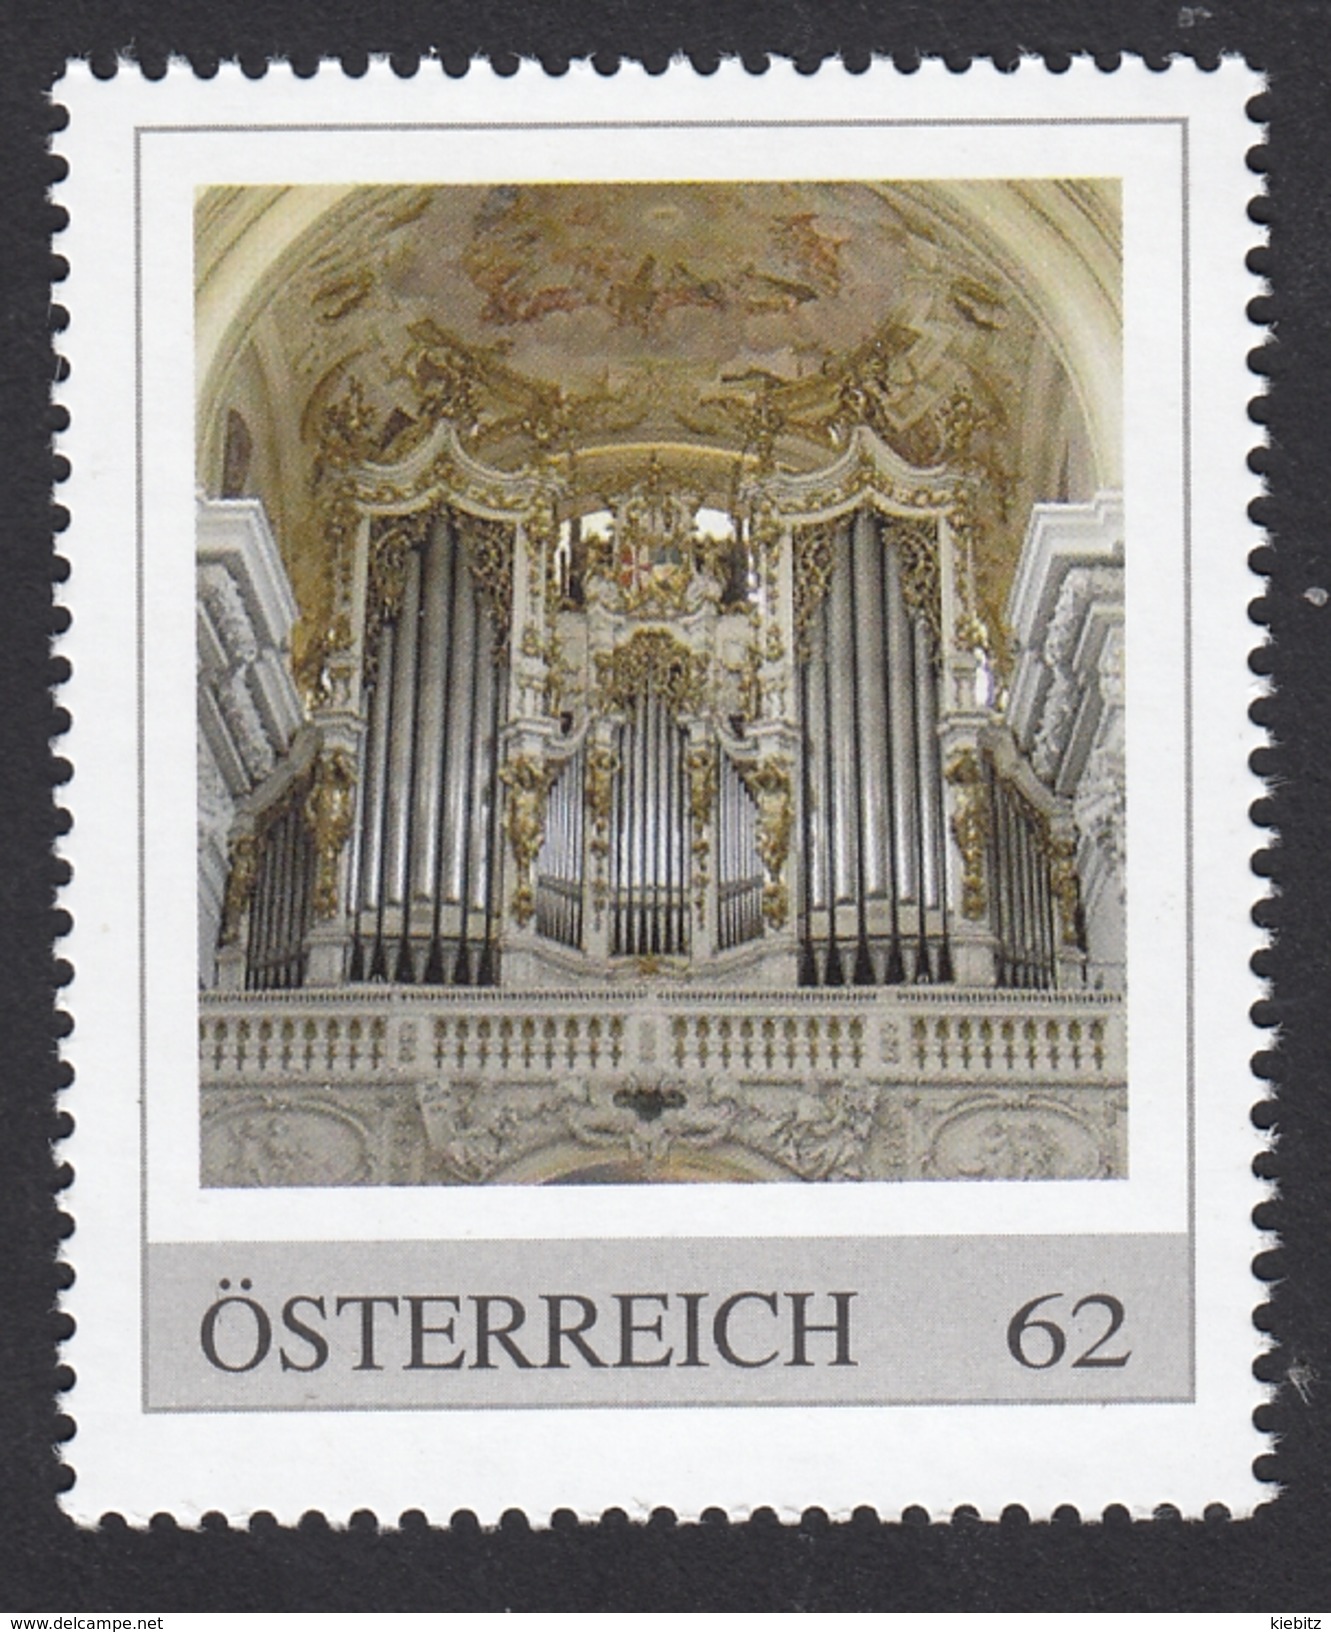 ÖSTERREICH 2013 ** Bruckner Orgel Im Stift St. Florian Bei Linz, Größte Orgel - PM Personalized Stamps MNH - Musik